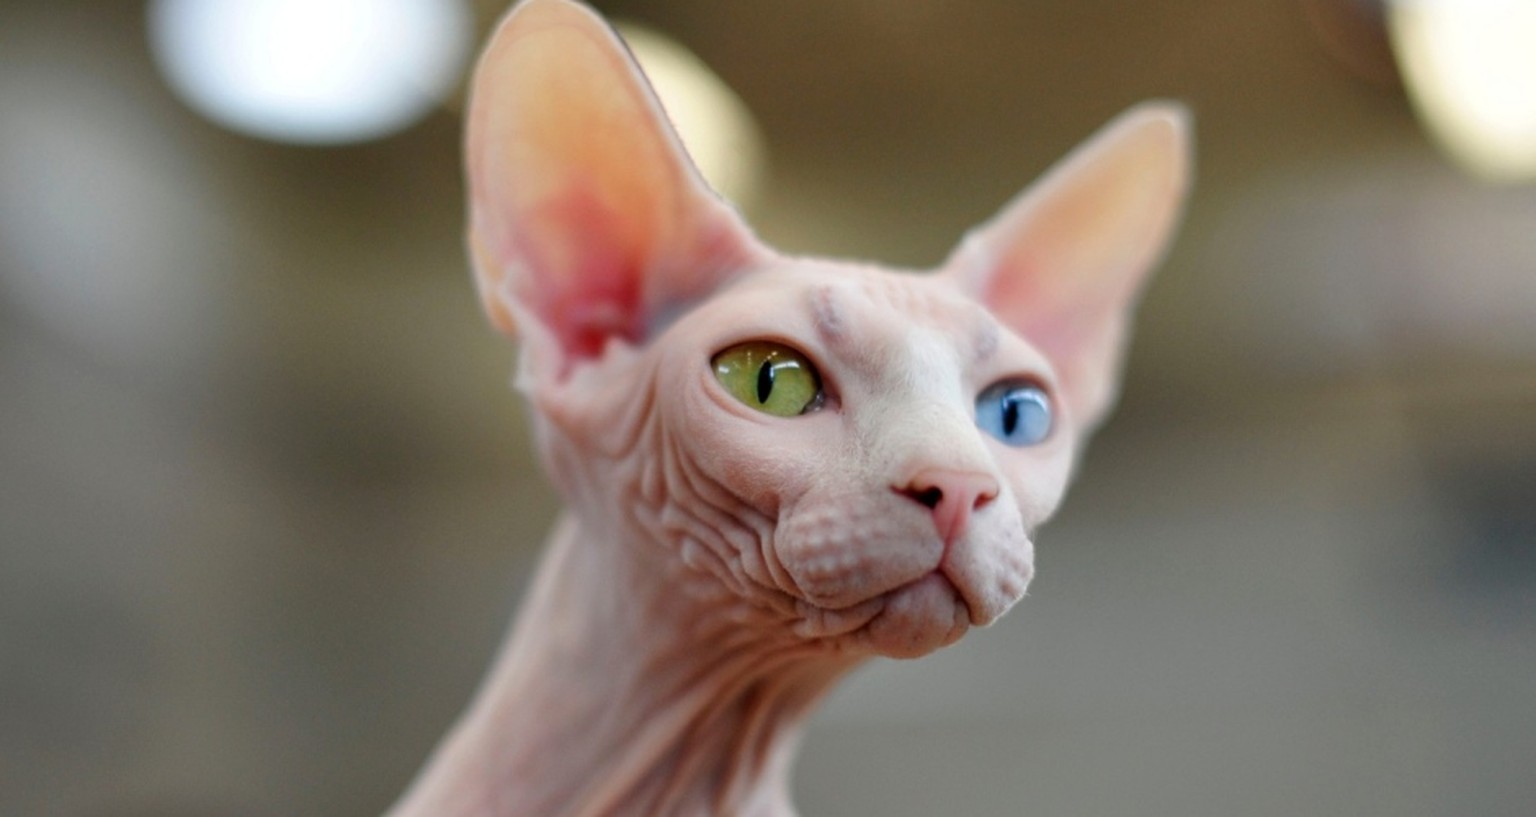 Odd-eyed Katzen mit zweifarbigen Augen. Katzenaugen